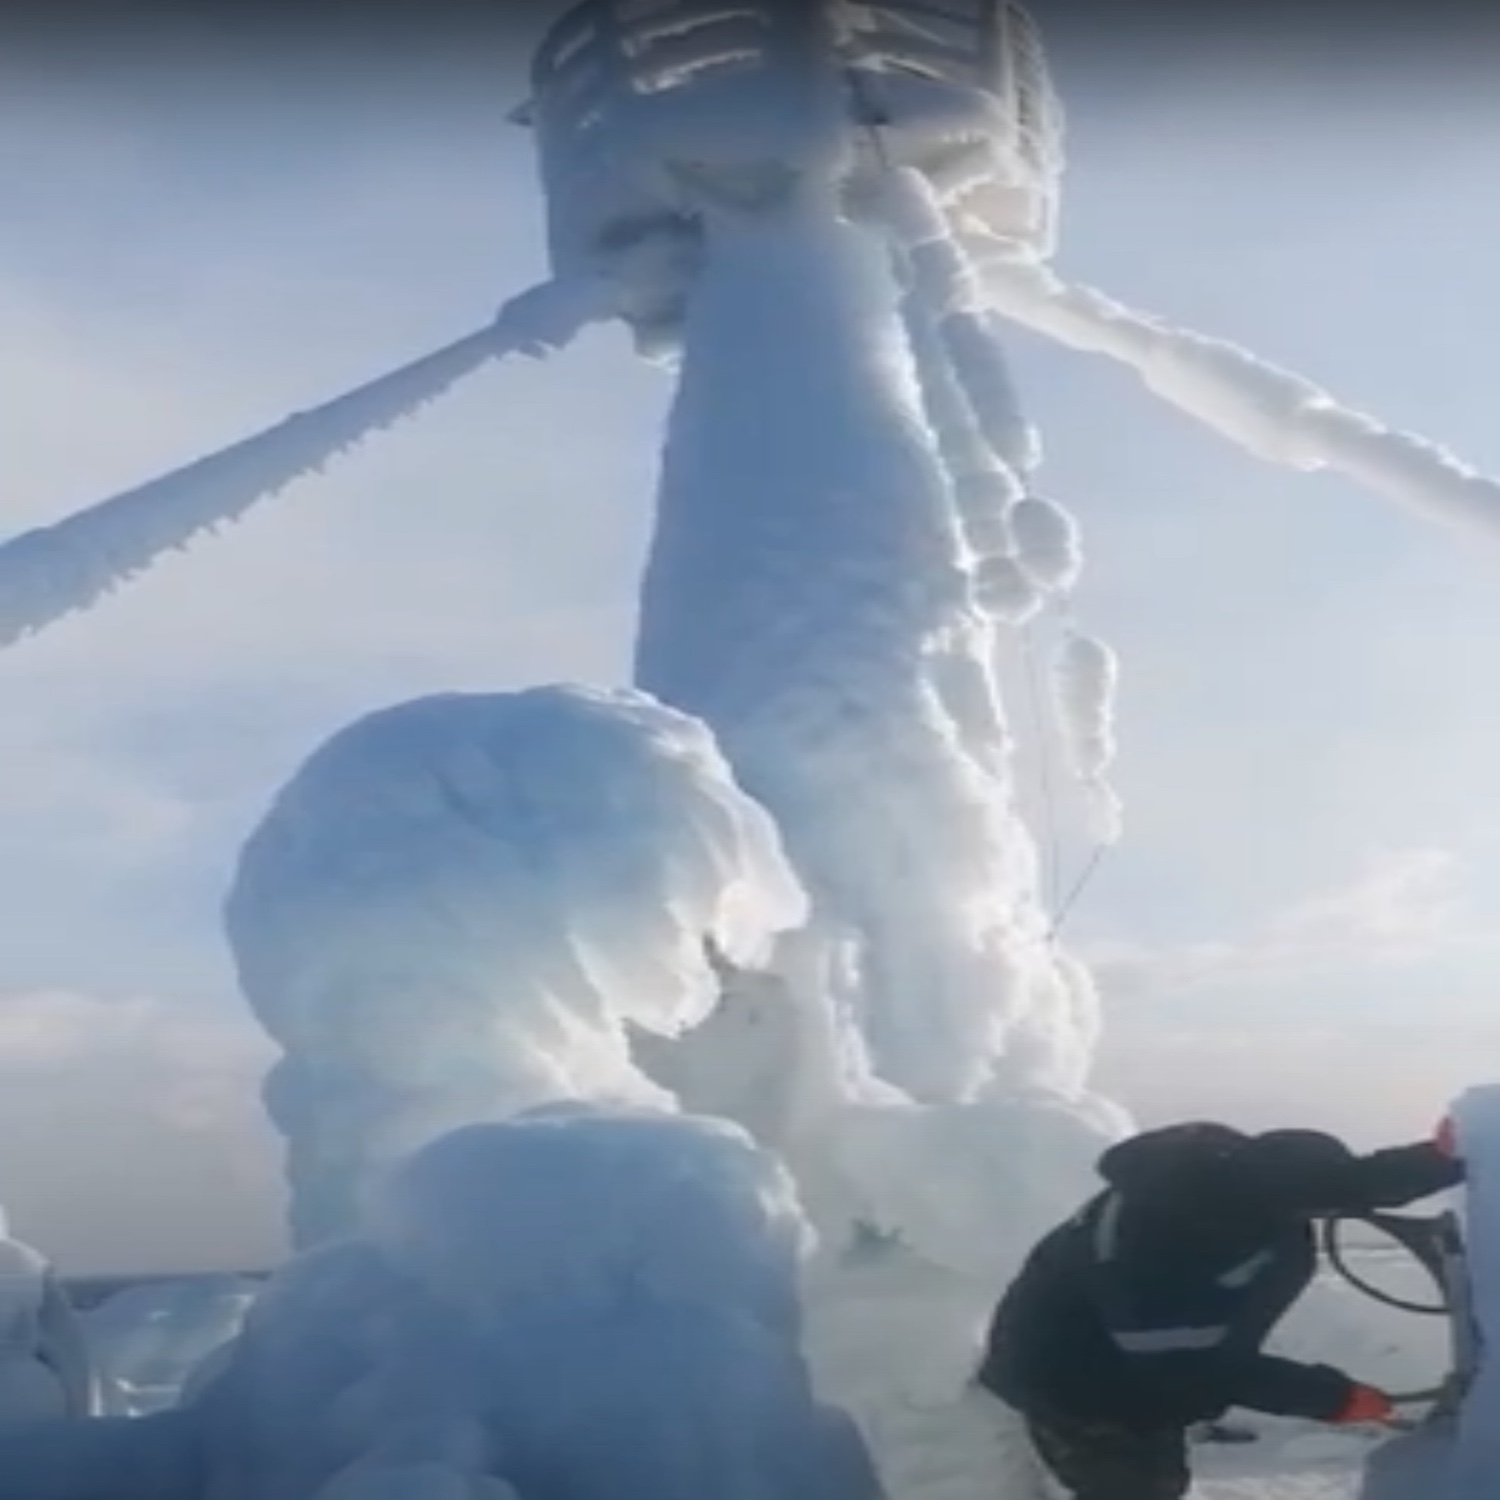 Ρωσικό πλοίο “παγώνει” σε ταξίδι του στον Ειρηνικό λόγω χαμηλών θερμοκρασιών (Video) - e-Nautilia.gr | Το Ελληνικό Portal για την Ναυτιλία. Τελευταία νέα, άρθρα, Οπτικοακουστικό Υλικό